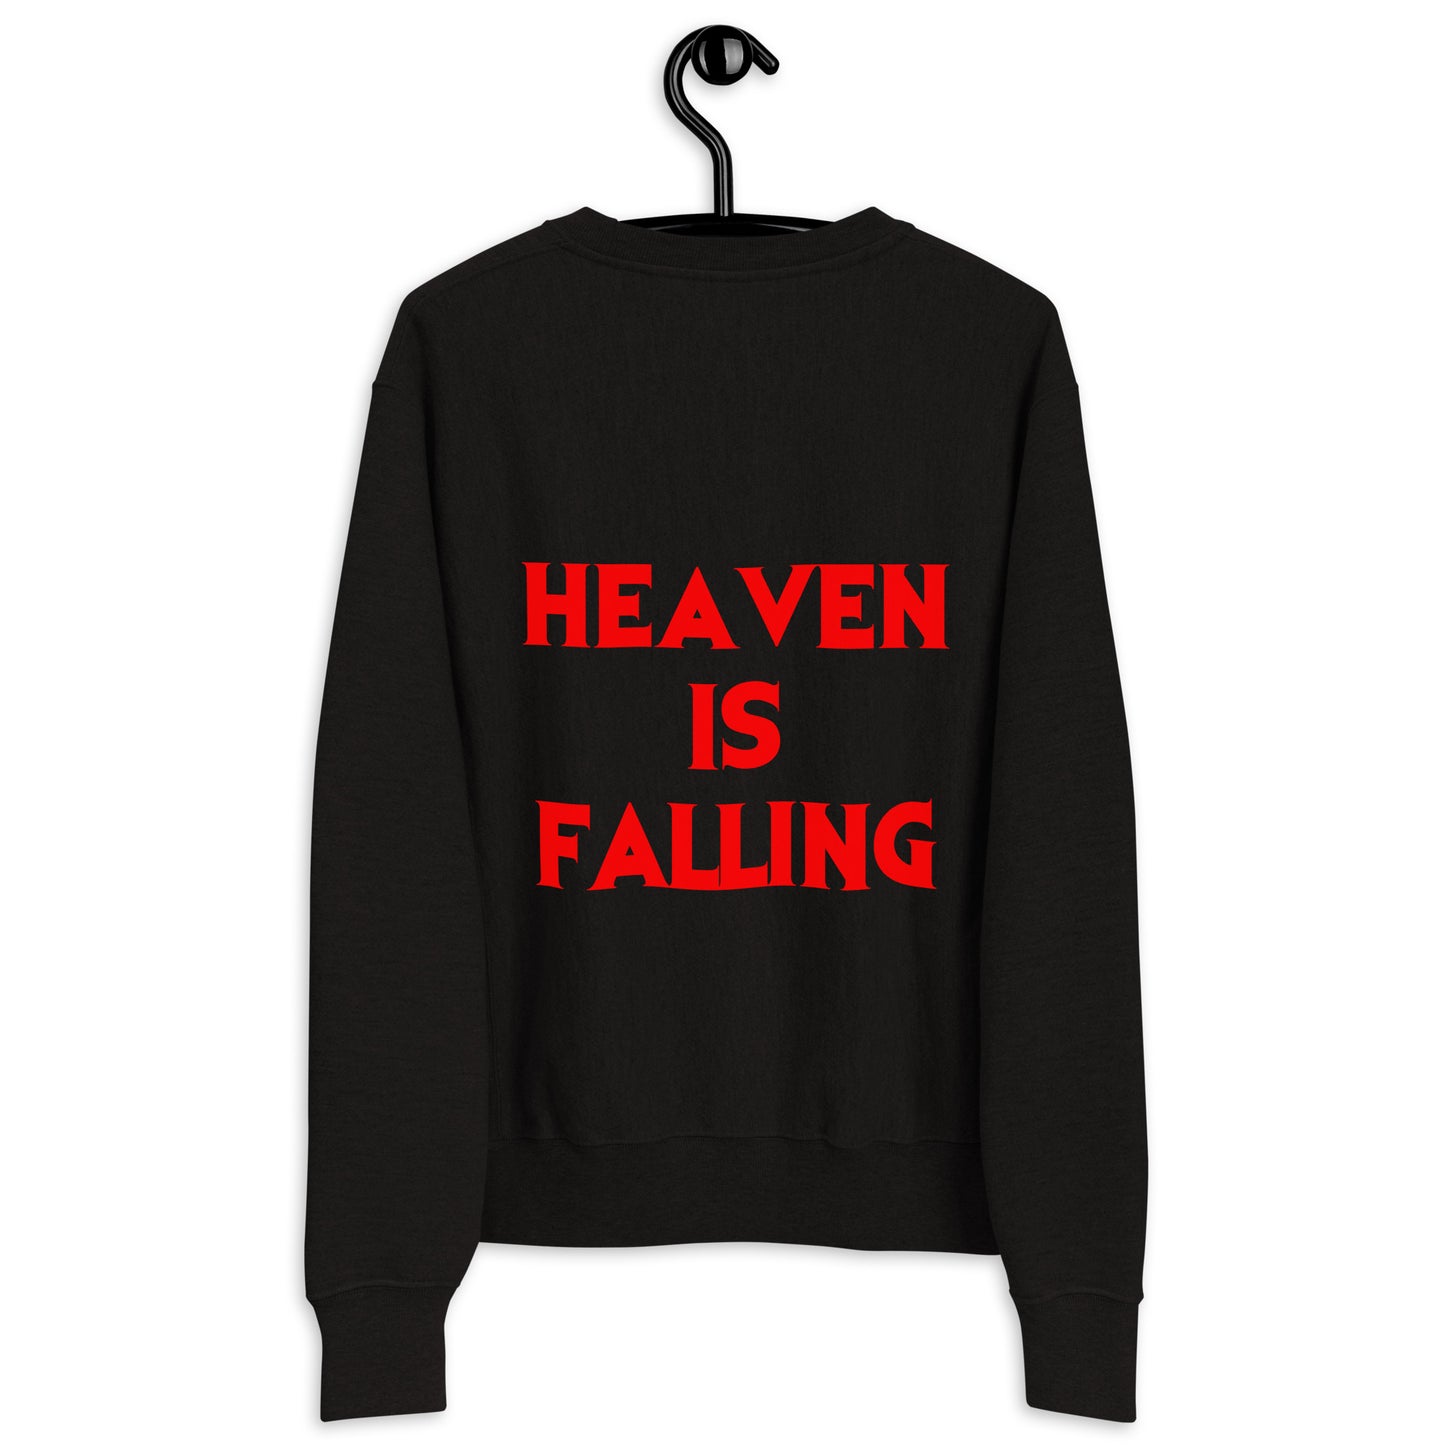 heaven is falling sweatshirt